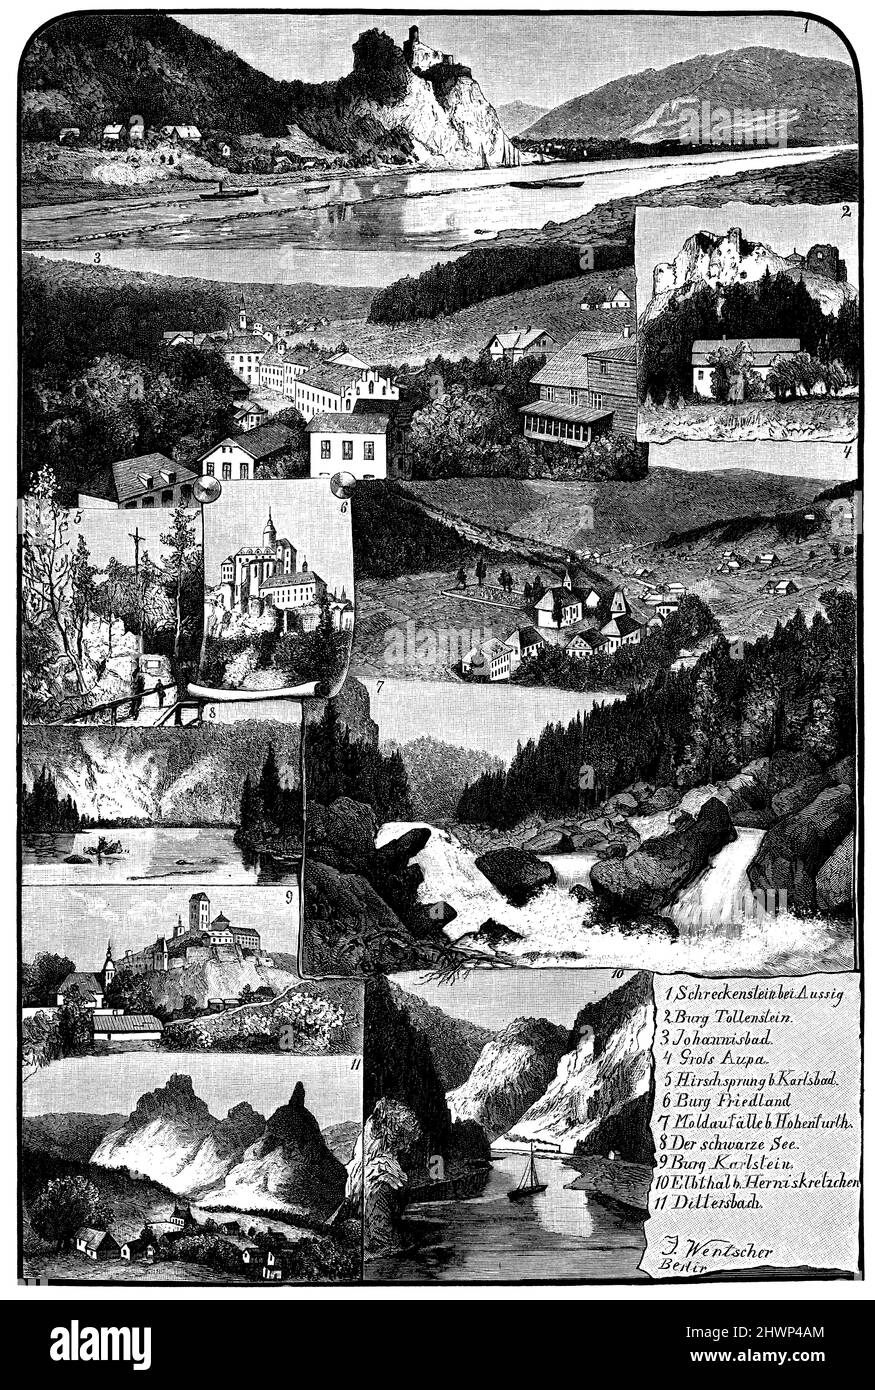 Bohemia. 1) Schreckenstein near Aussig, 2) Tollenstein Castle, 3) Johannisbad, 4) Gross-Aupa, 5) Hirschsprung near Karlsbad, 6) Friedland Castle, 7) Moldaufall near Hohenturth, 8) Schwarzes See, 9) Karlstein Castle, 10) Elbthal near Herniskretzchen, 11) Dittersbach., ,  (encyclopedia, 1893), Böhmen. 1) Schreckenstein bei Aussig, 2) Burg Tollenstein, 3) Johannisbad, 4) Gross-Aupa, 5) Hirschsprung bei Karlsbad, 6) Burg Friedland, 7) Moldaufall bei Hohenturth, 8) Schwarzes See, 9) Burg Karlstein, 10) Elbthal bei Herniskretzchen, 11) Dittersbach., Bohême. 1) Schreckenstein près d'Aussig, 2) châtea Stock Photo